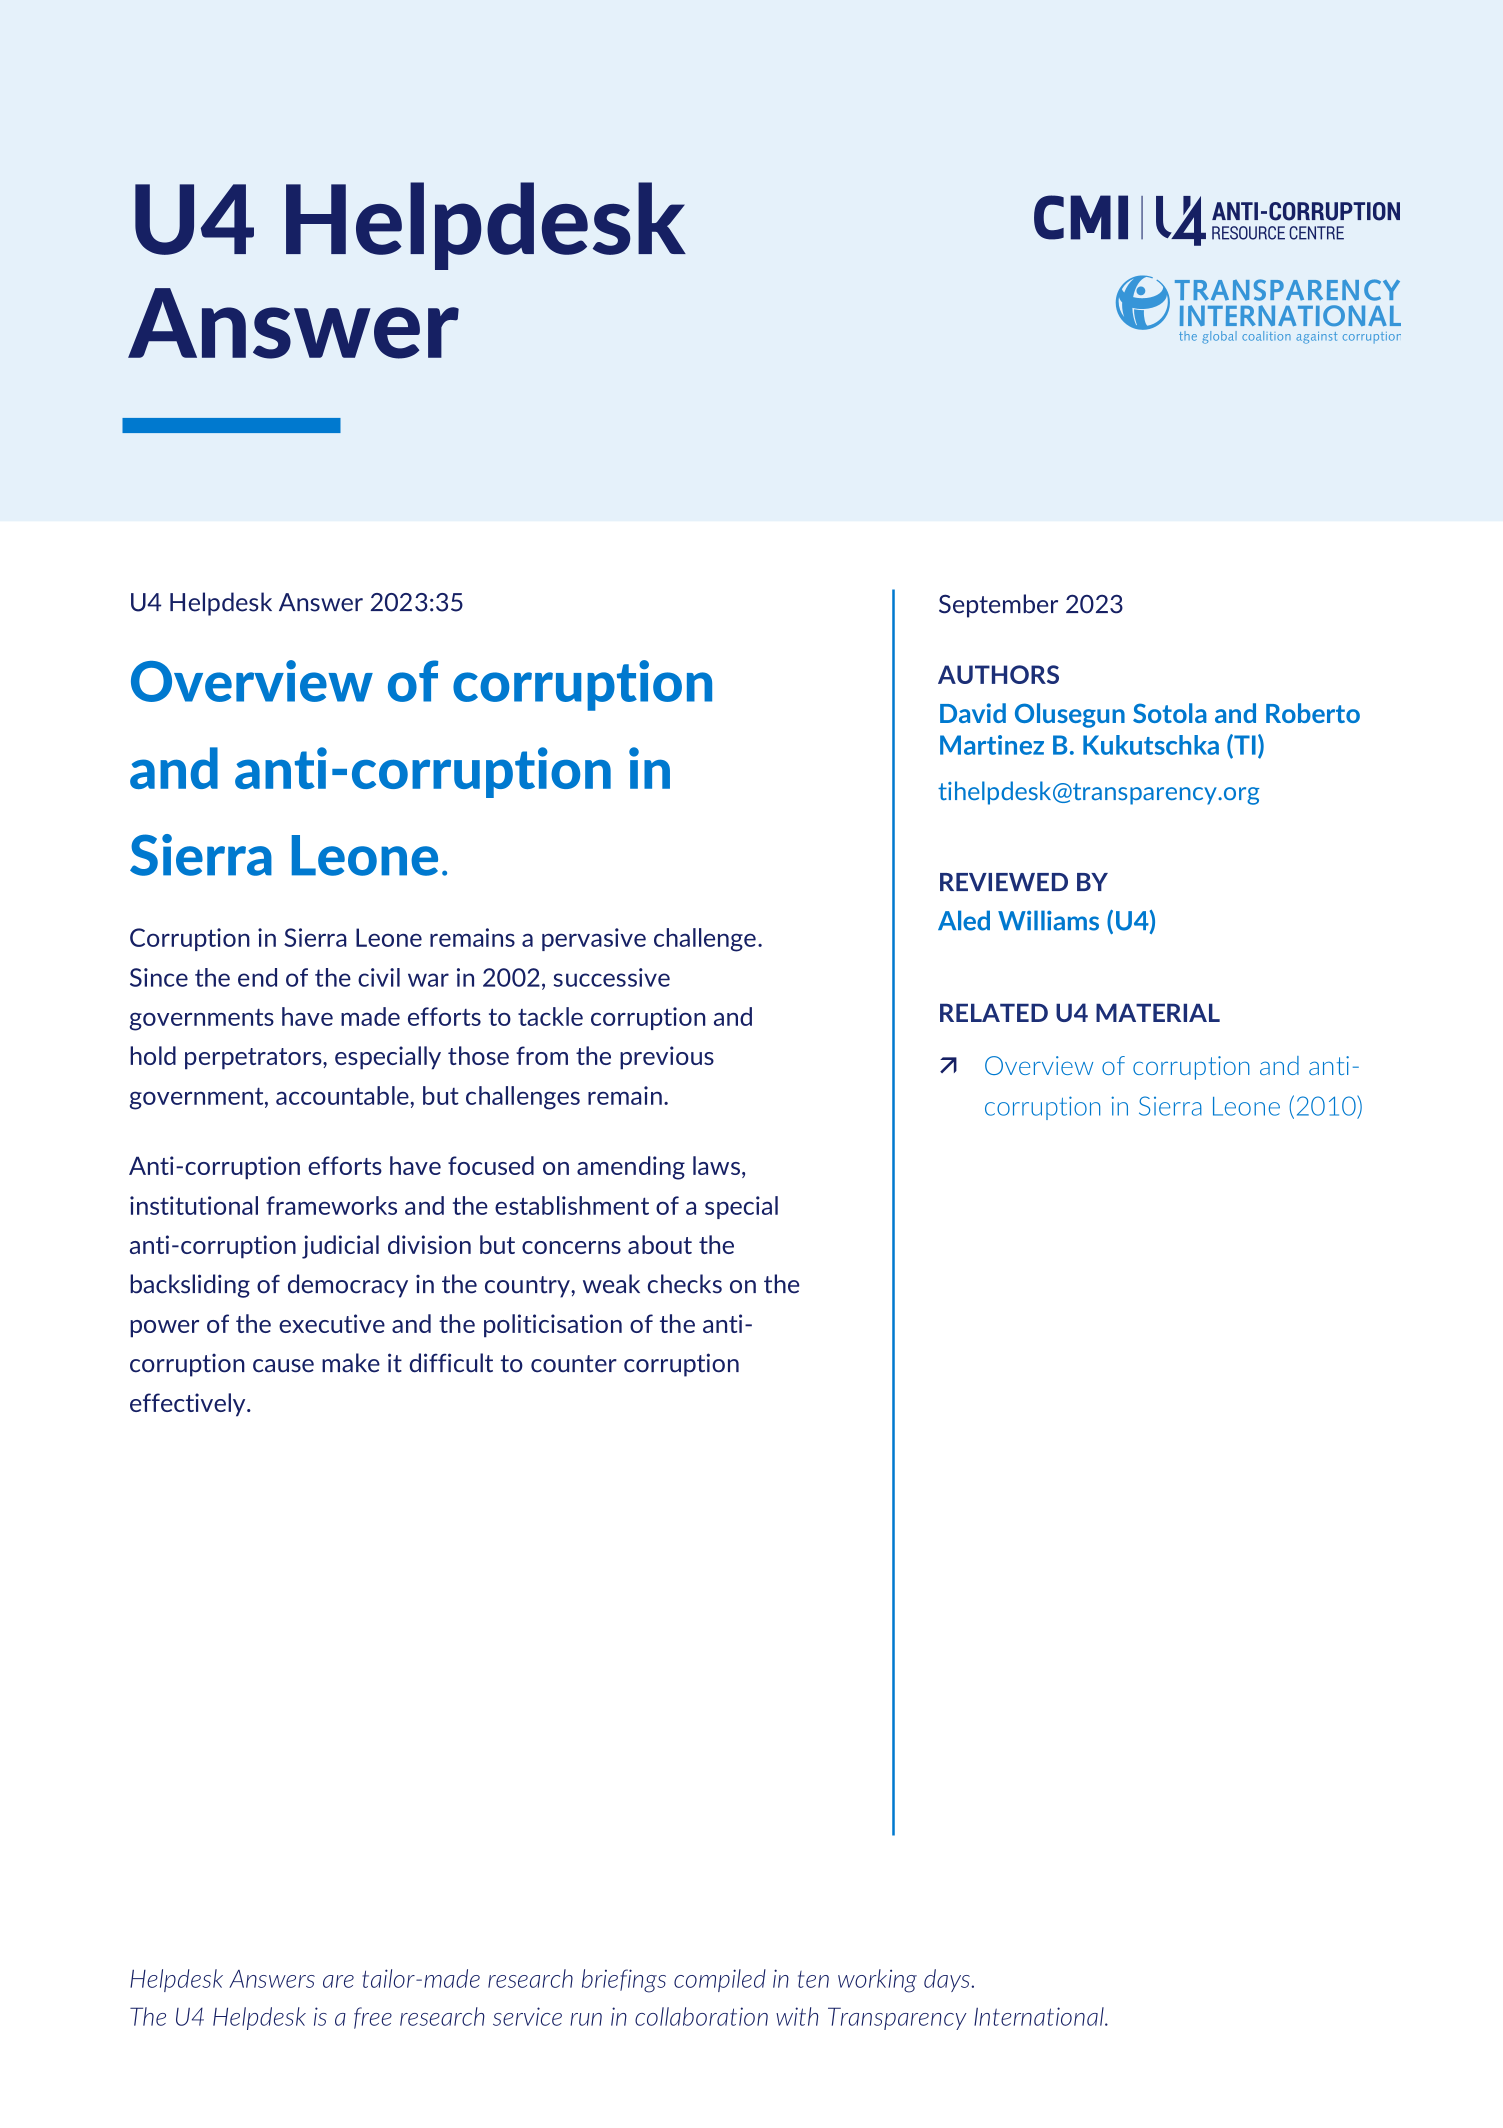 Sierra Leone: Corruption and anti-corruption